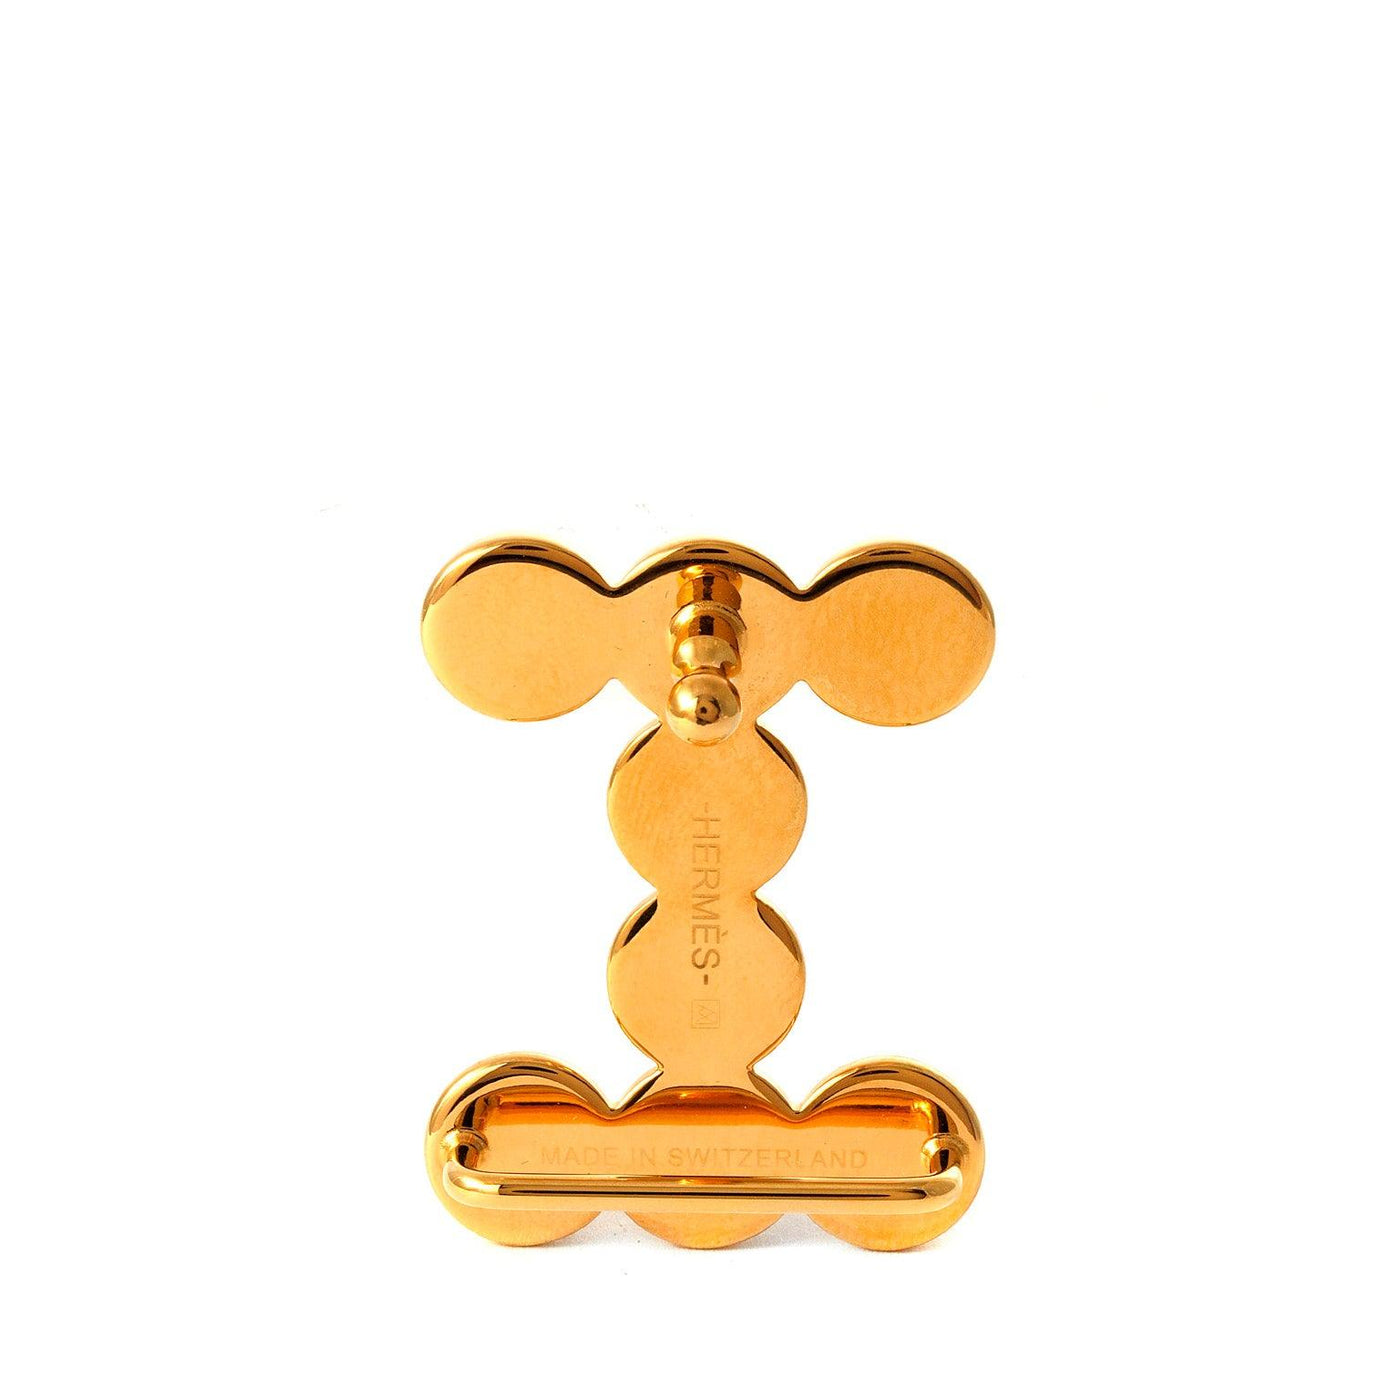 Hermes Gold H Bubble Belt Buckle - Only Authentics